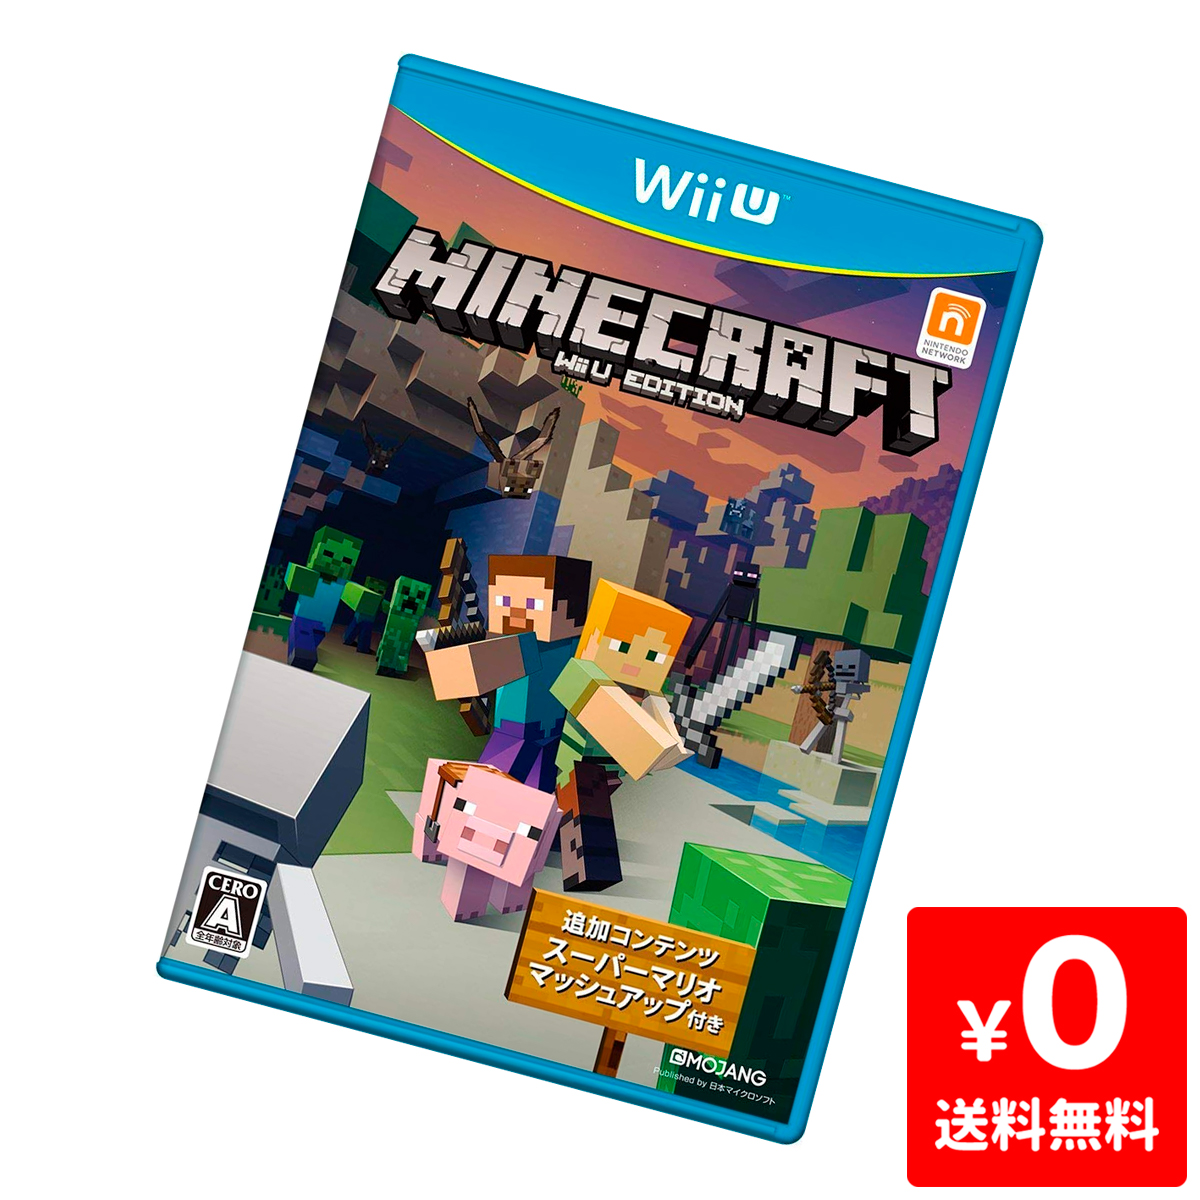 楽天市場 中古 Minecraft Wii U Editionソフト Wiiuソフト シミュレーション ゲーム ゲオオンラインストア 楽天市場店